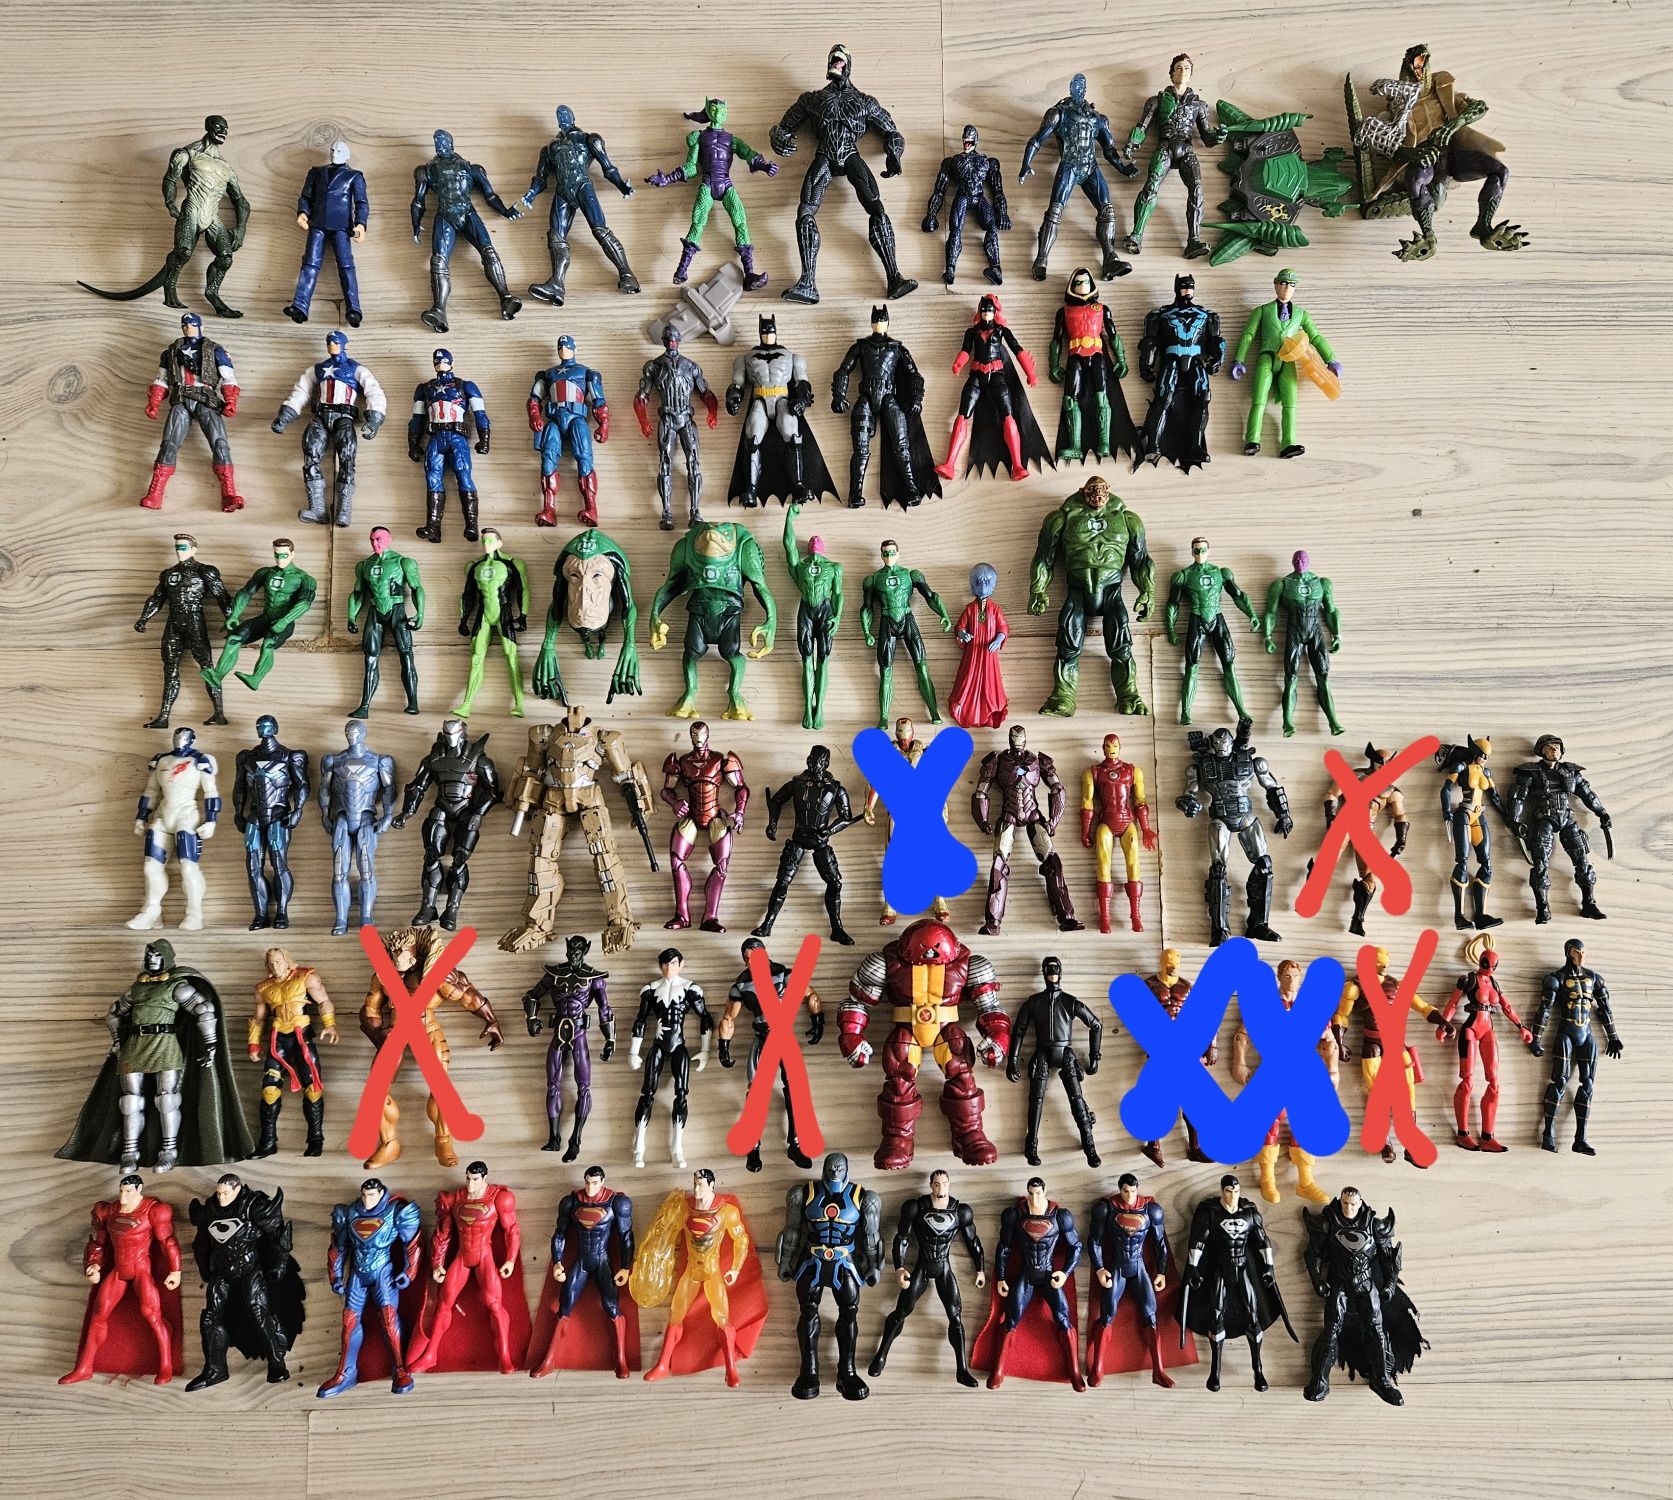 72 de figurine Marvel/Dc articulate-citeste descrierea